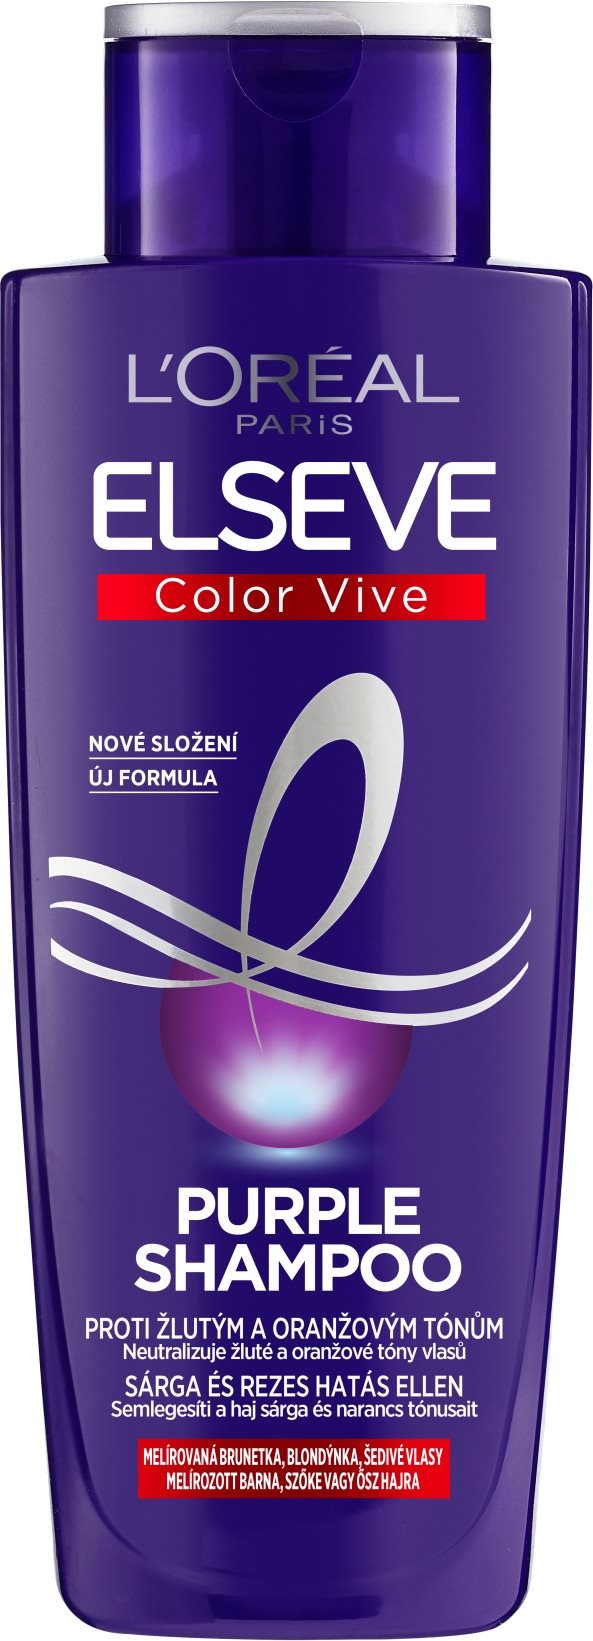 L'ORÉAL PARIS Elseve Color Vive Purple Shampoo 200 ml